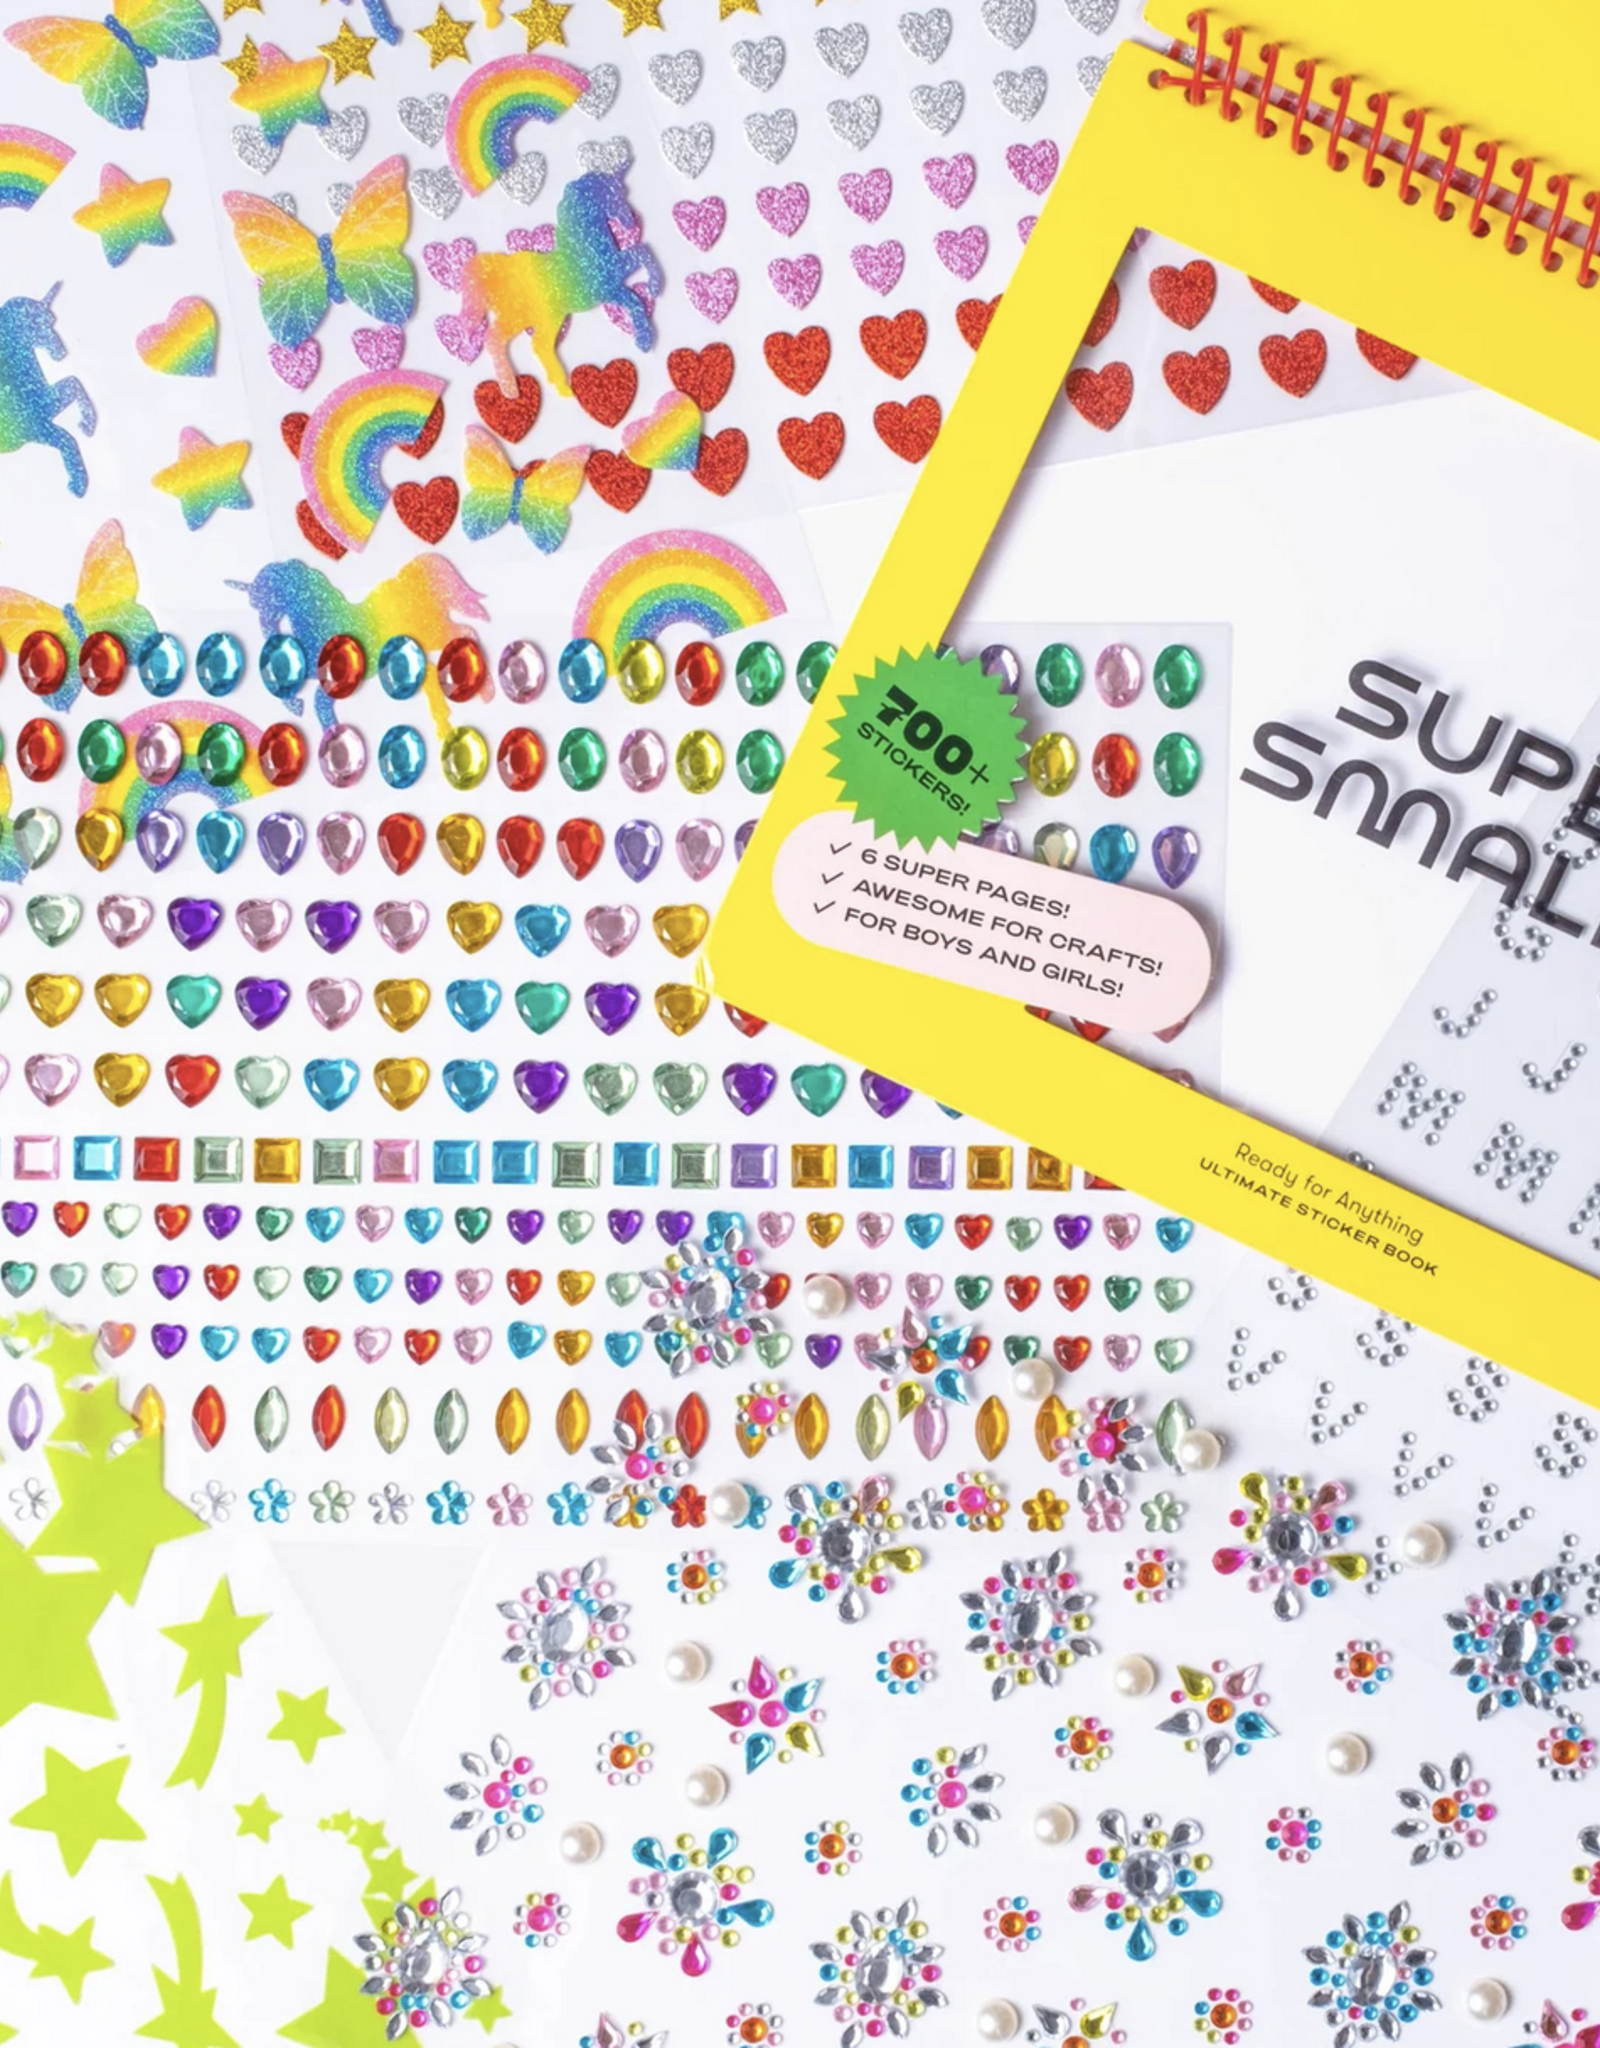 Super Smalls ultimate (mega sized!) sticker book